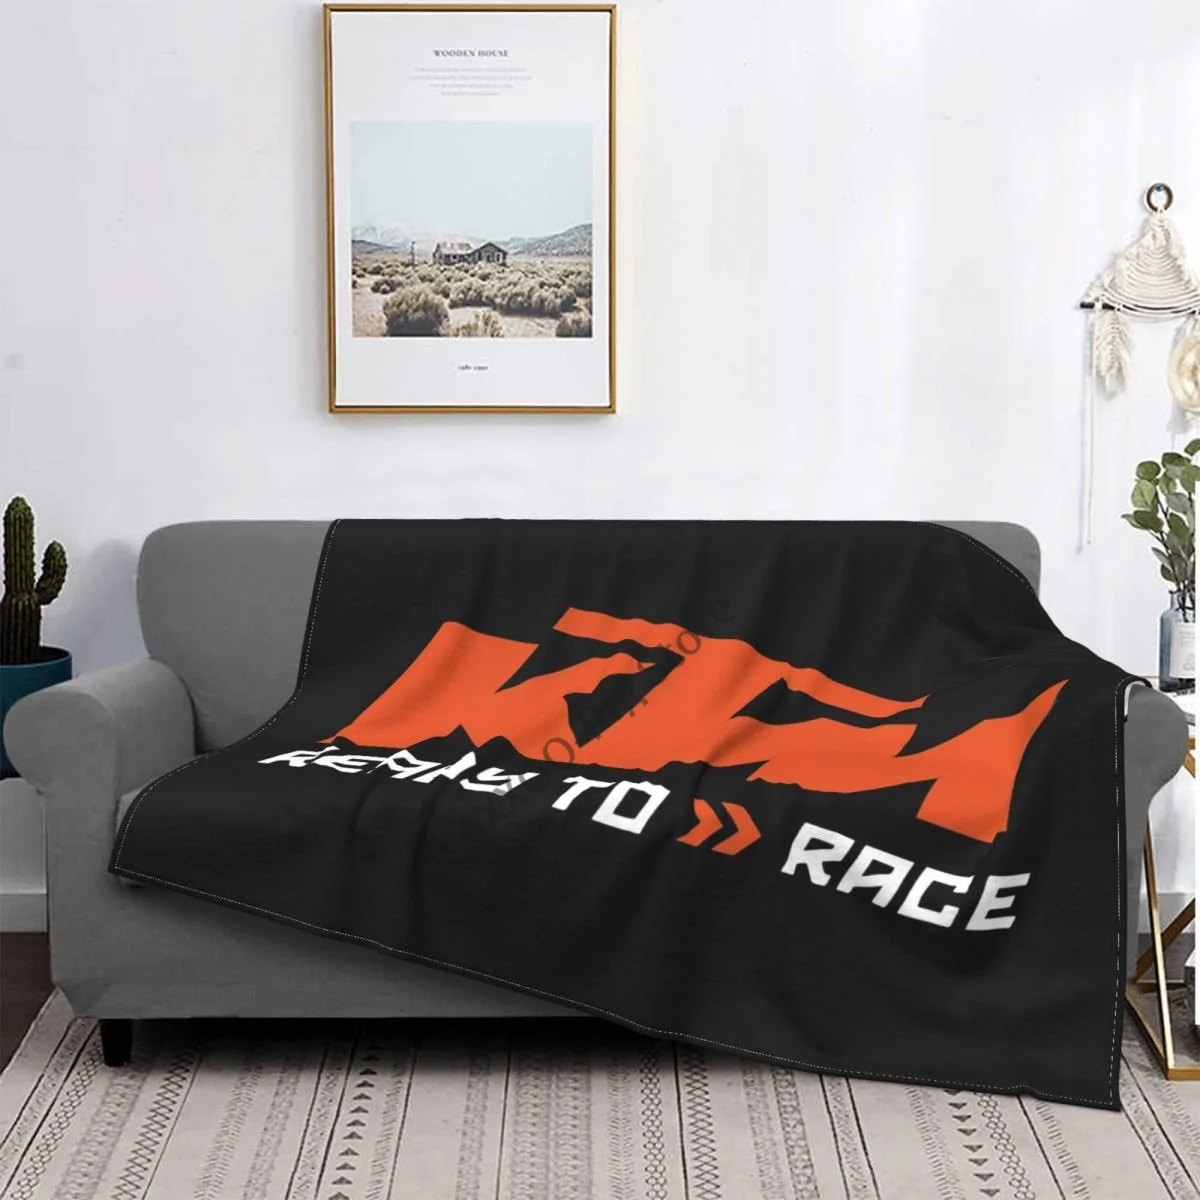 

Ворсистое мягкое одеяло диван/кровать/путешествия Любовь Подарки гонки Ag спорт Мотогонки фабрика гоночный мотоцикл эндуро